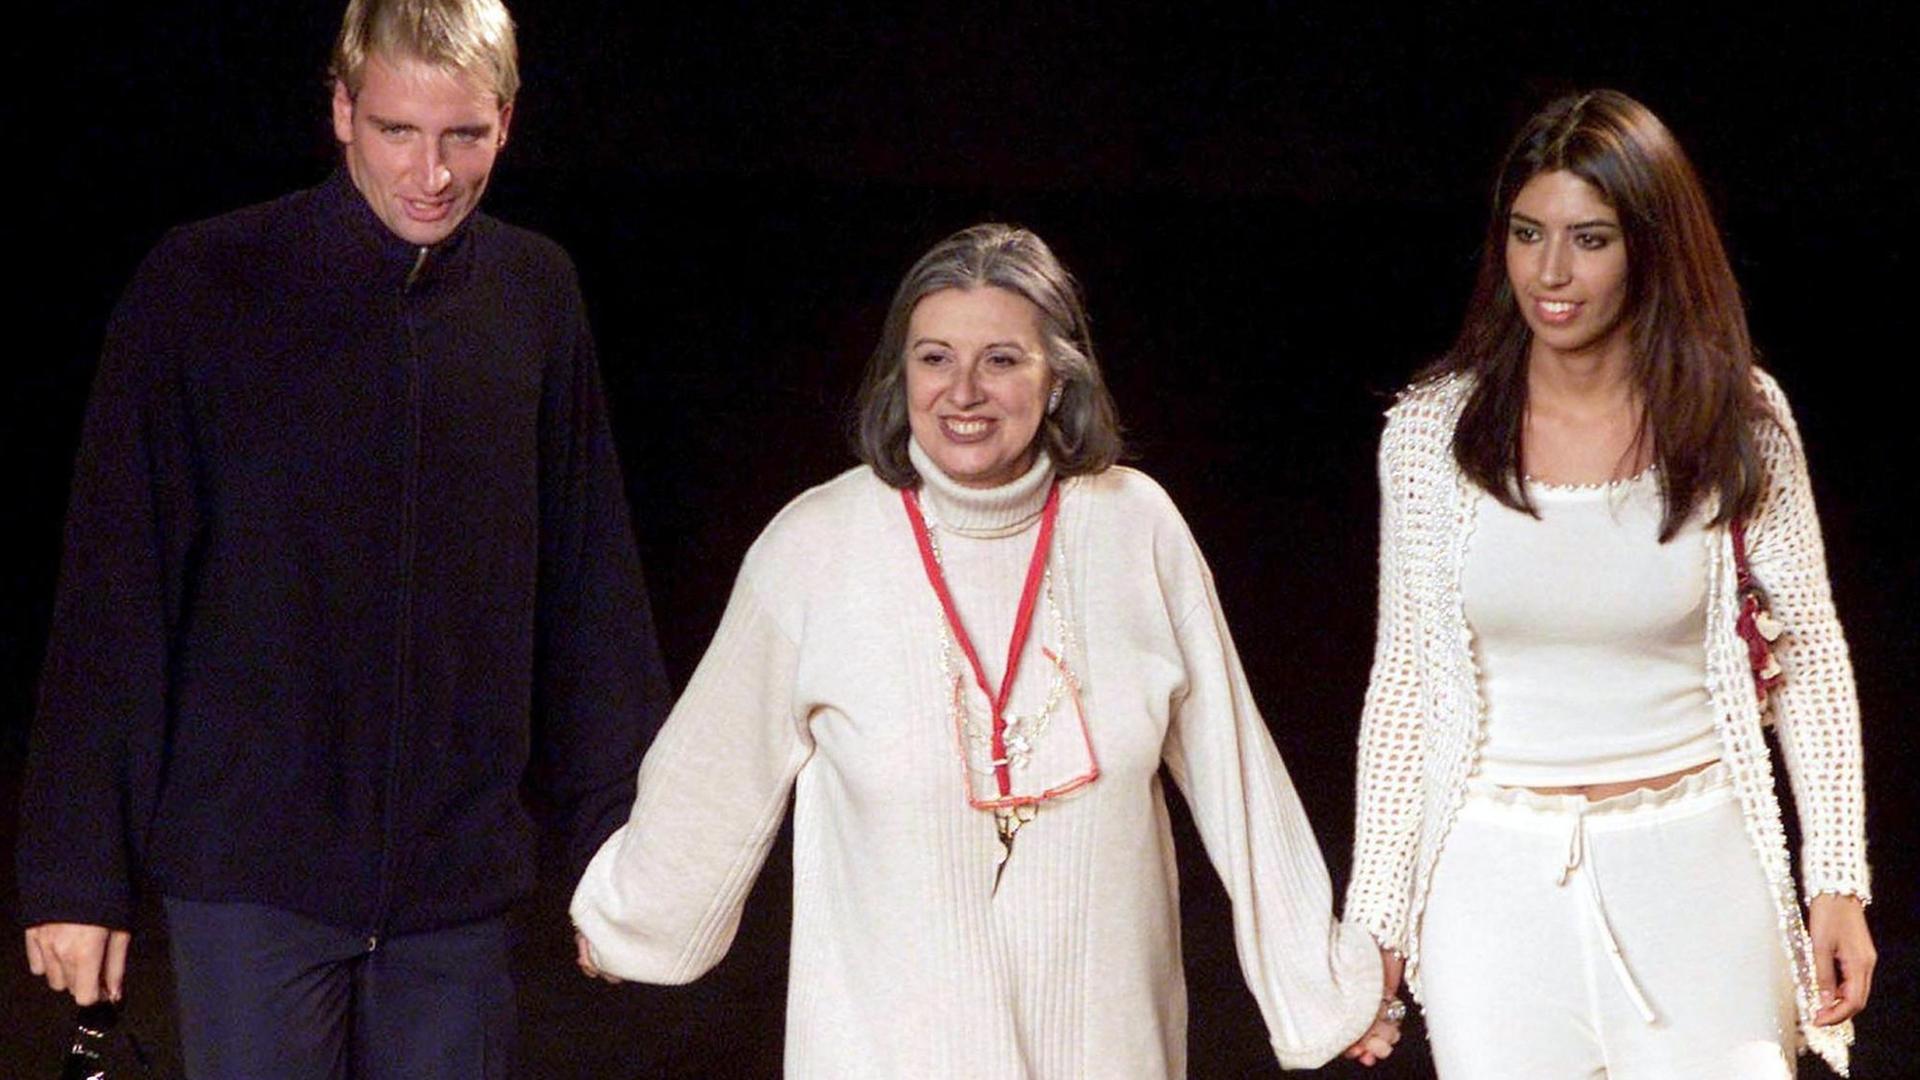 Die italienische Modeschöpferin Laura Biagiotti (M), ihre Tochter Lavinia und der italienische Schwimm-Olympiasieger Massimiliano Rosolino, der als Dressman auftrat, bei einer Modenschau 2001.